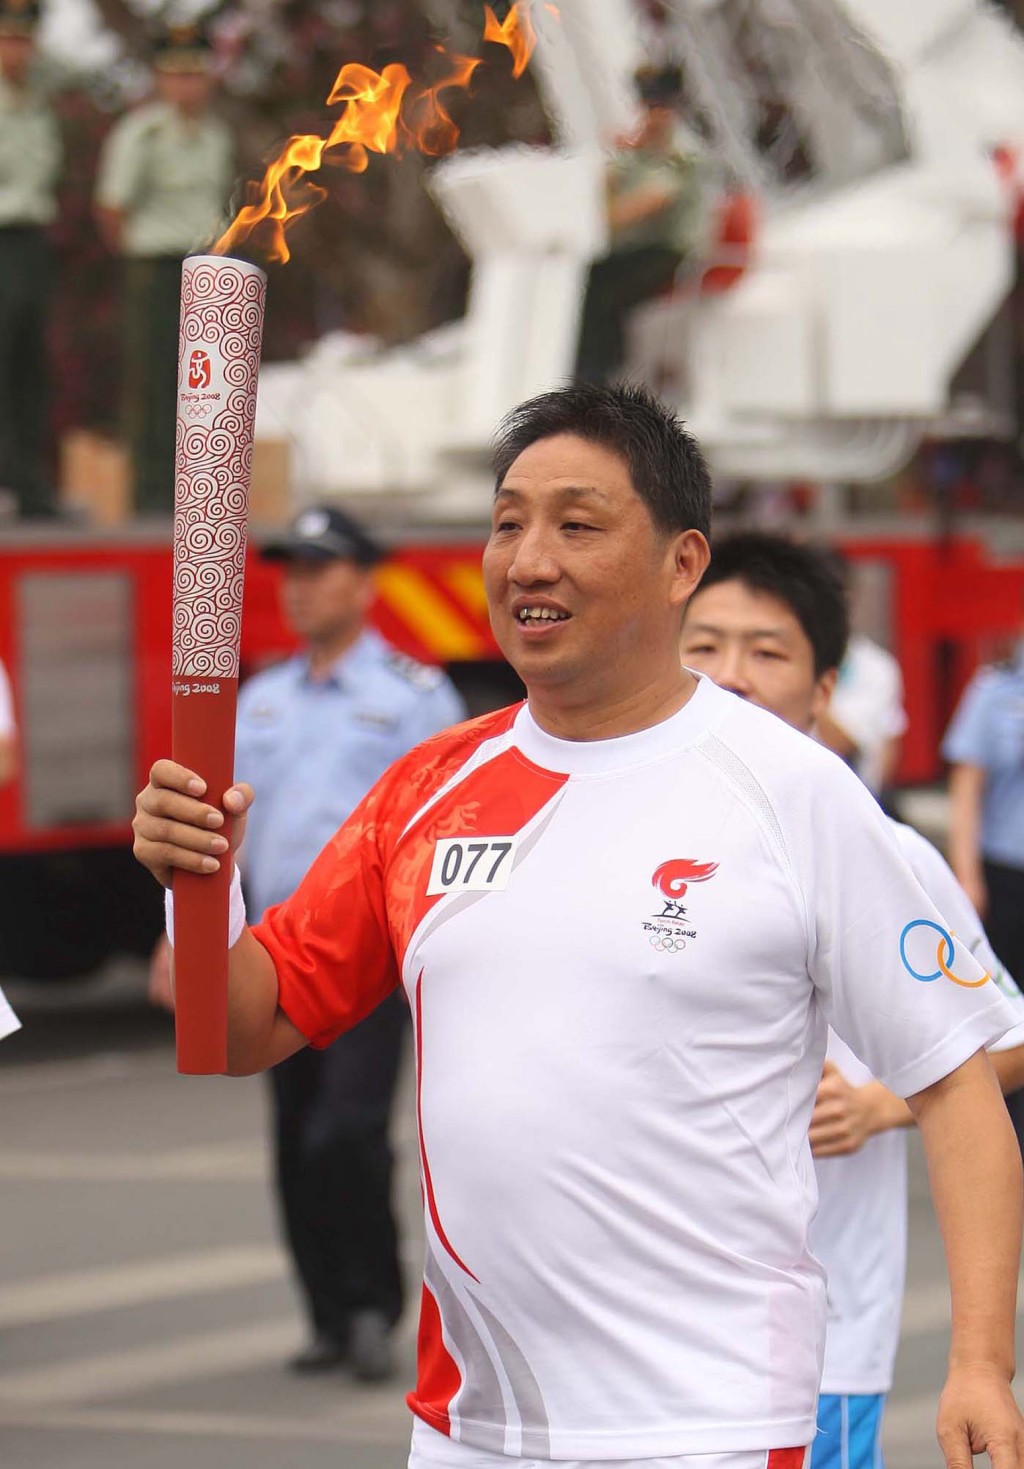 柳大华曾被选为2008年北京奥运火炬手。 新华社